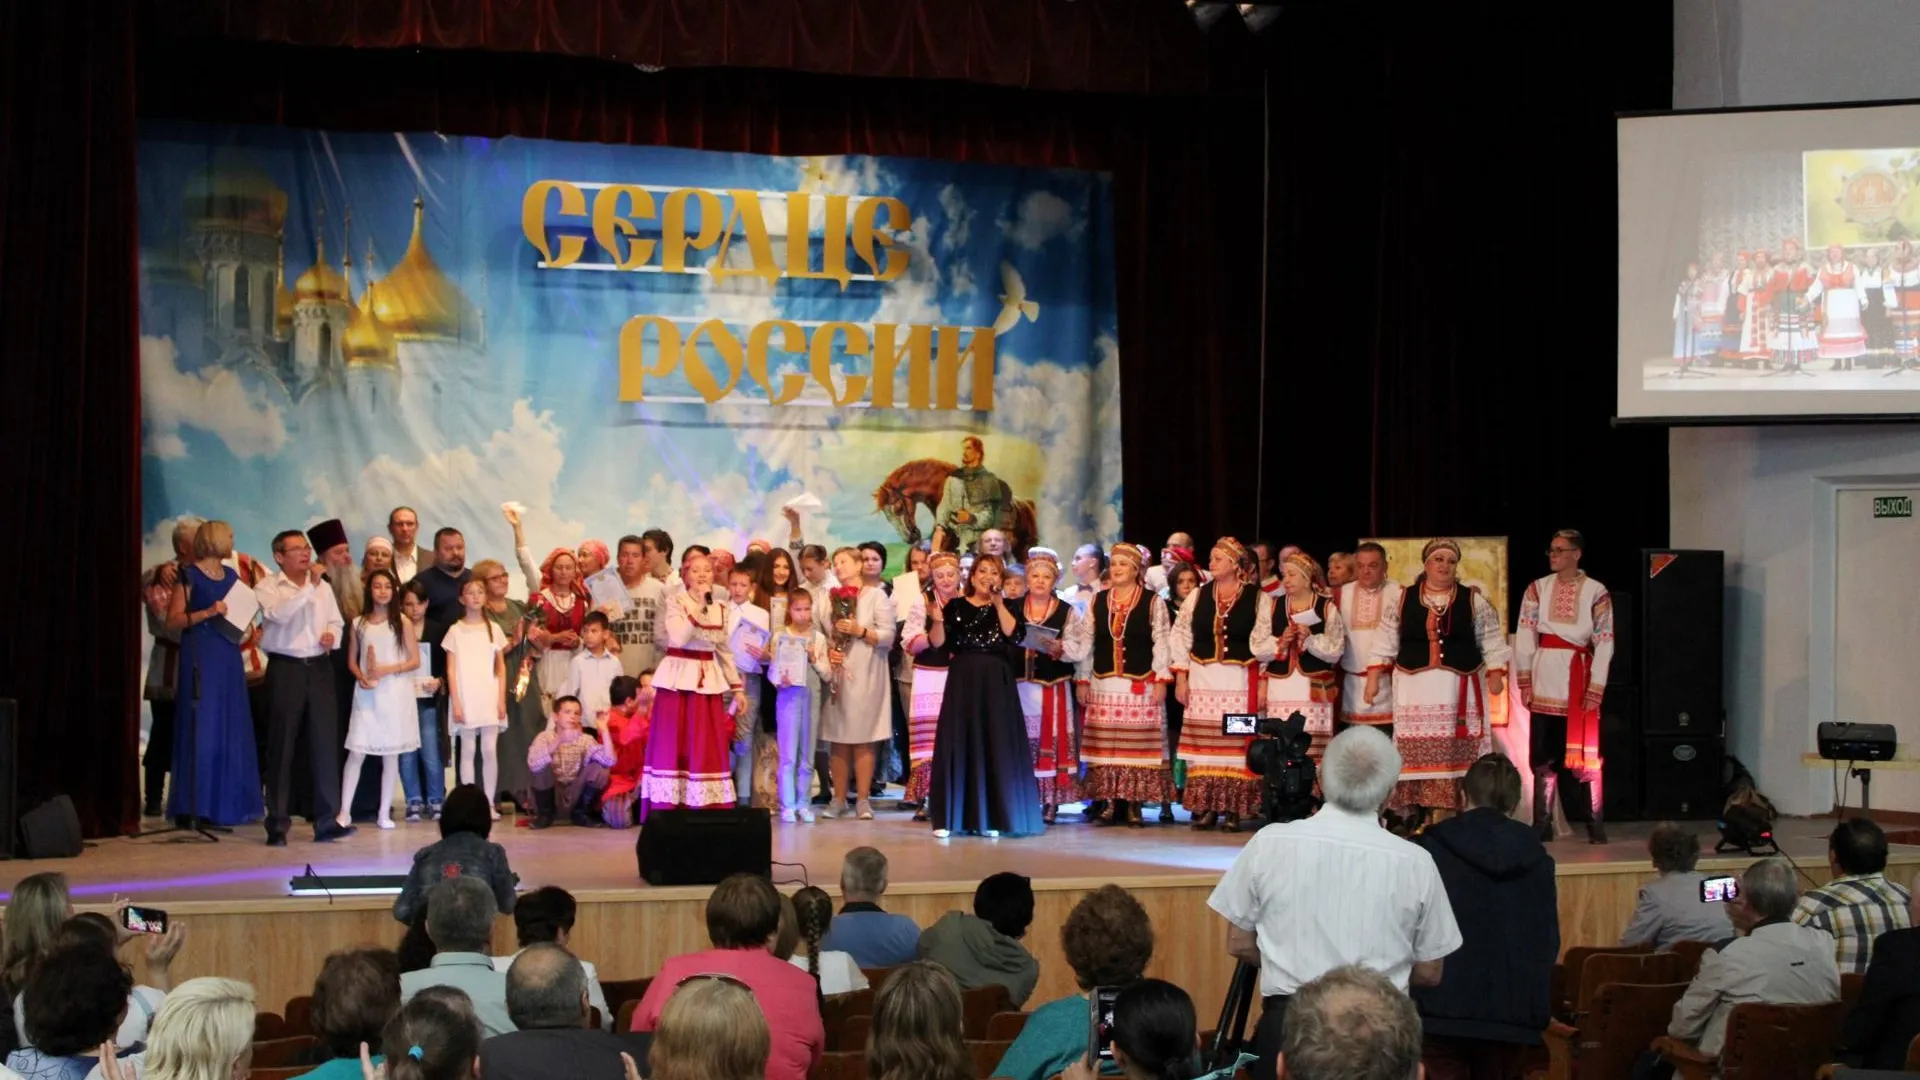 Областной фестиваль-конкурс «Сердце России» пройдет в эти выходные в подмосковной деревне Березняки